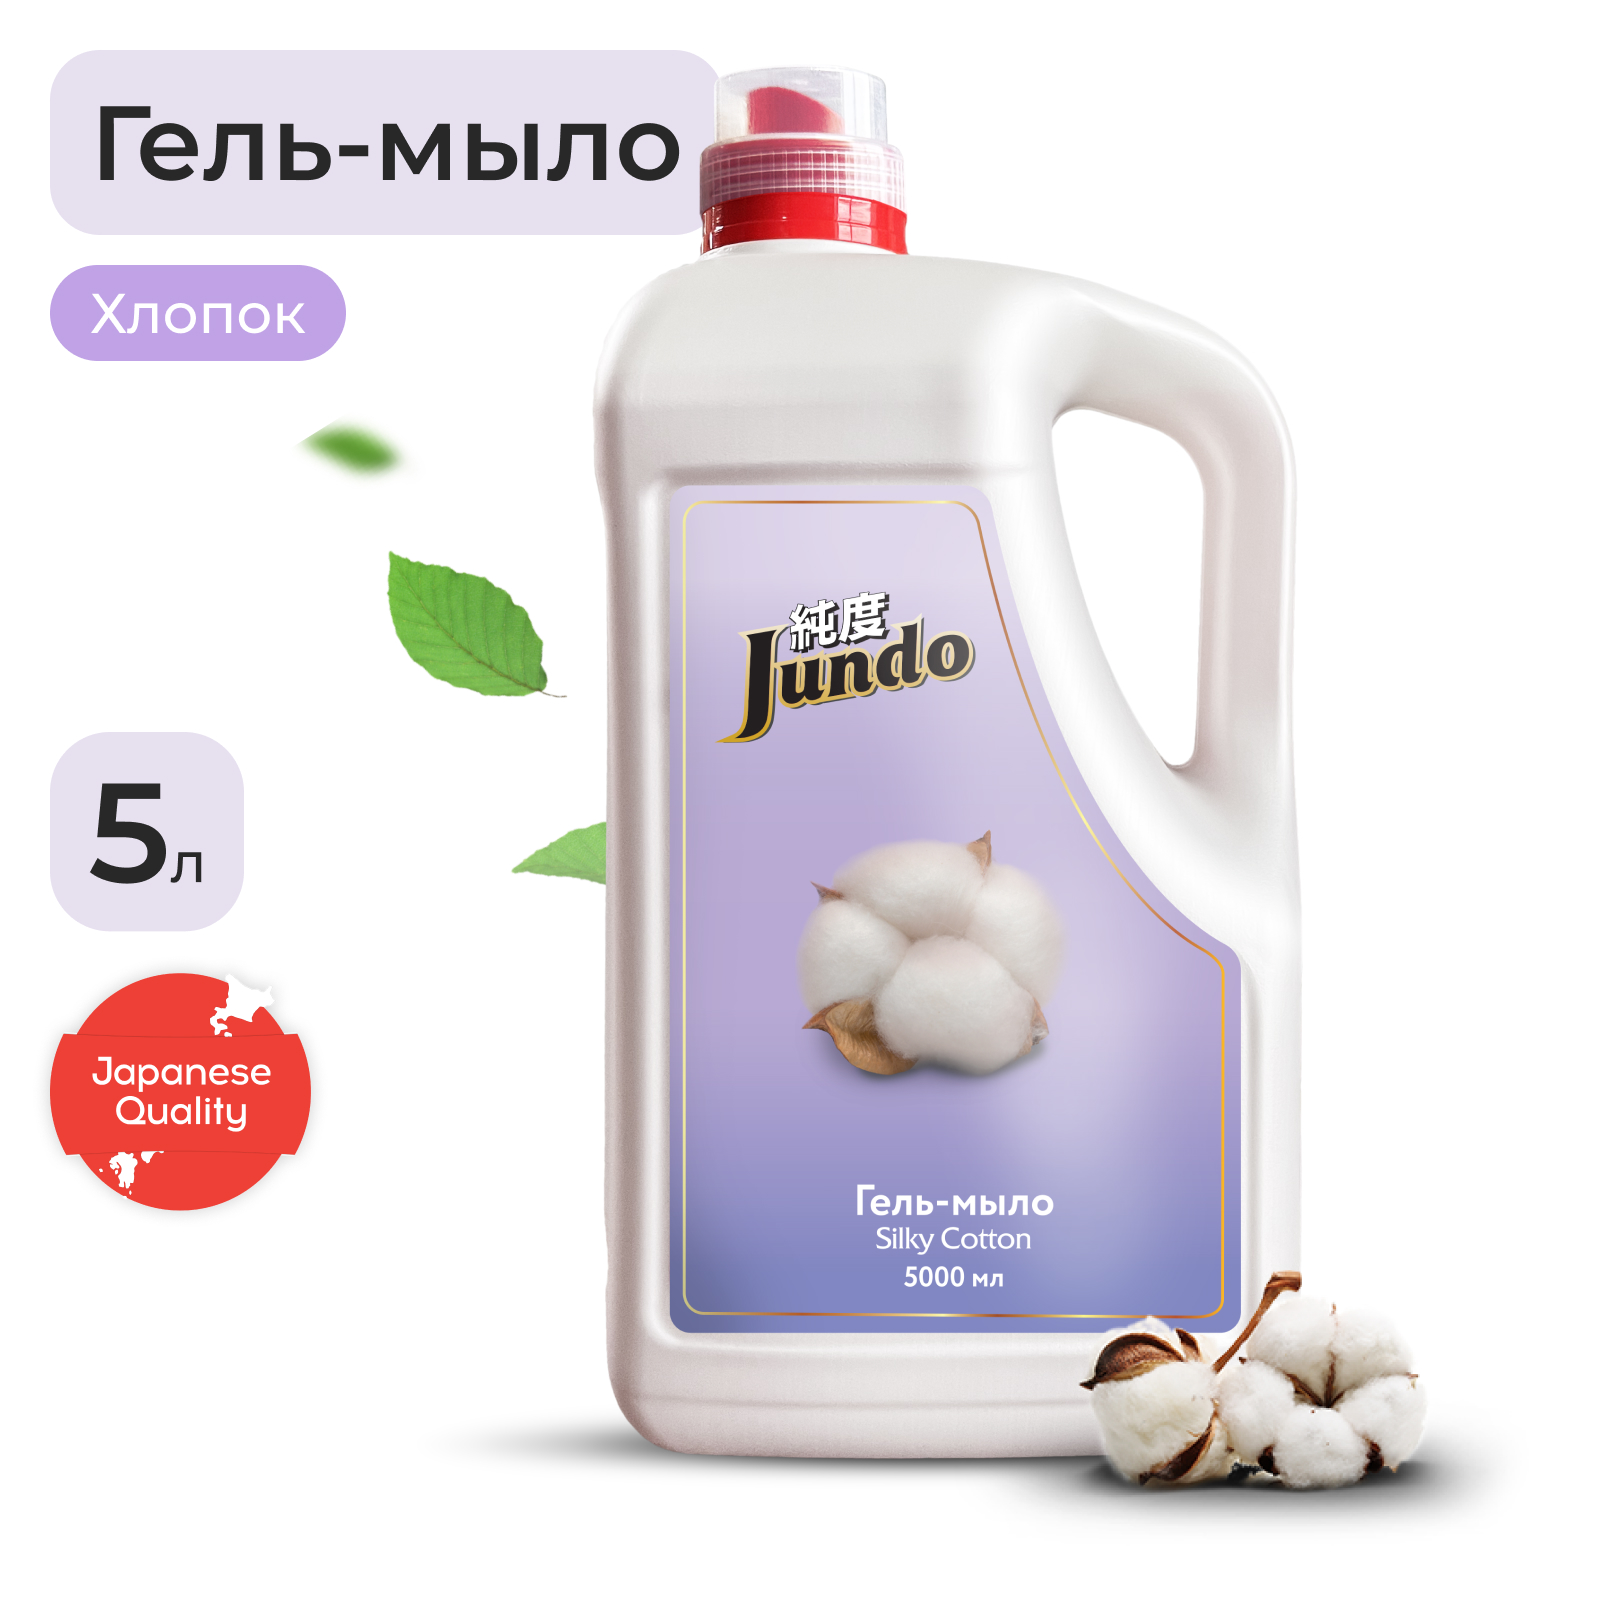 Гель-мыло Jundo Silky cotton 5 л collistar питательный крем для тела с эфирными маслами benessere della felicita